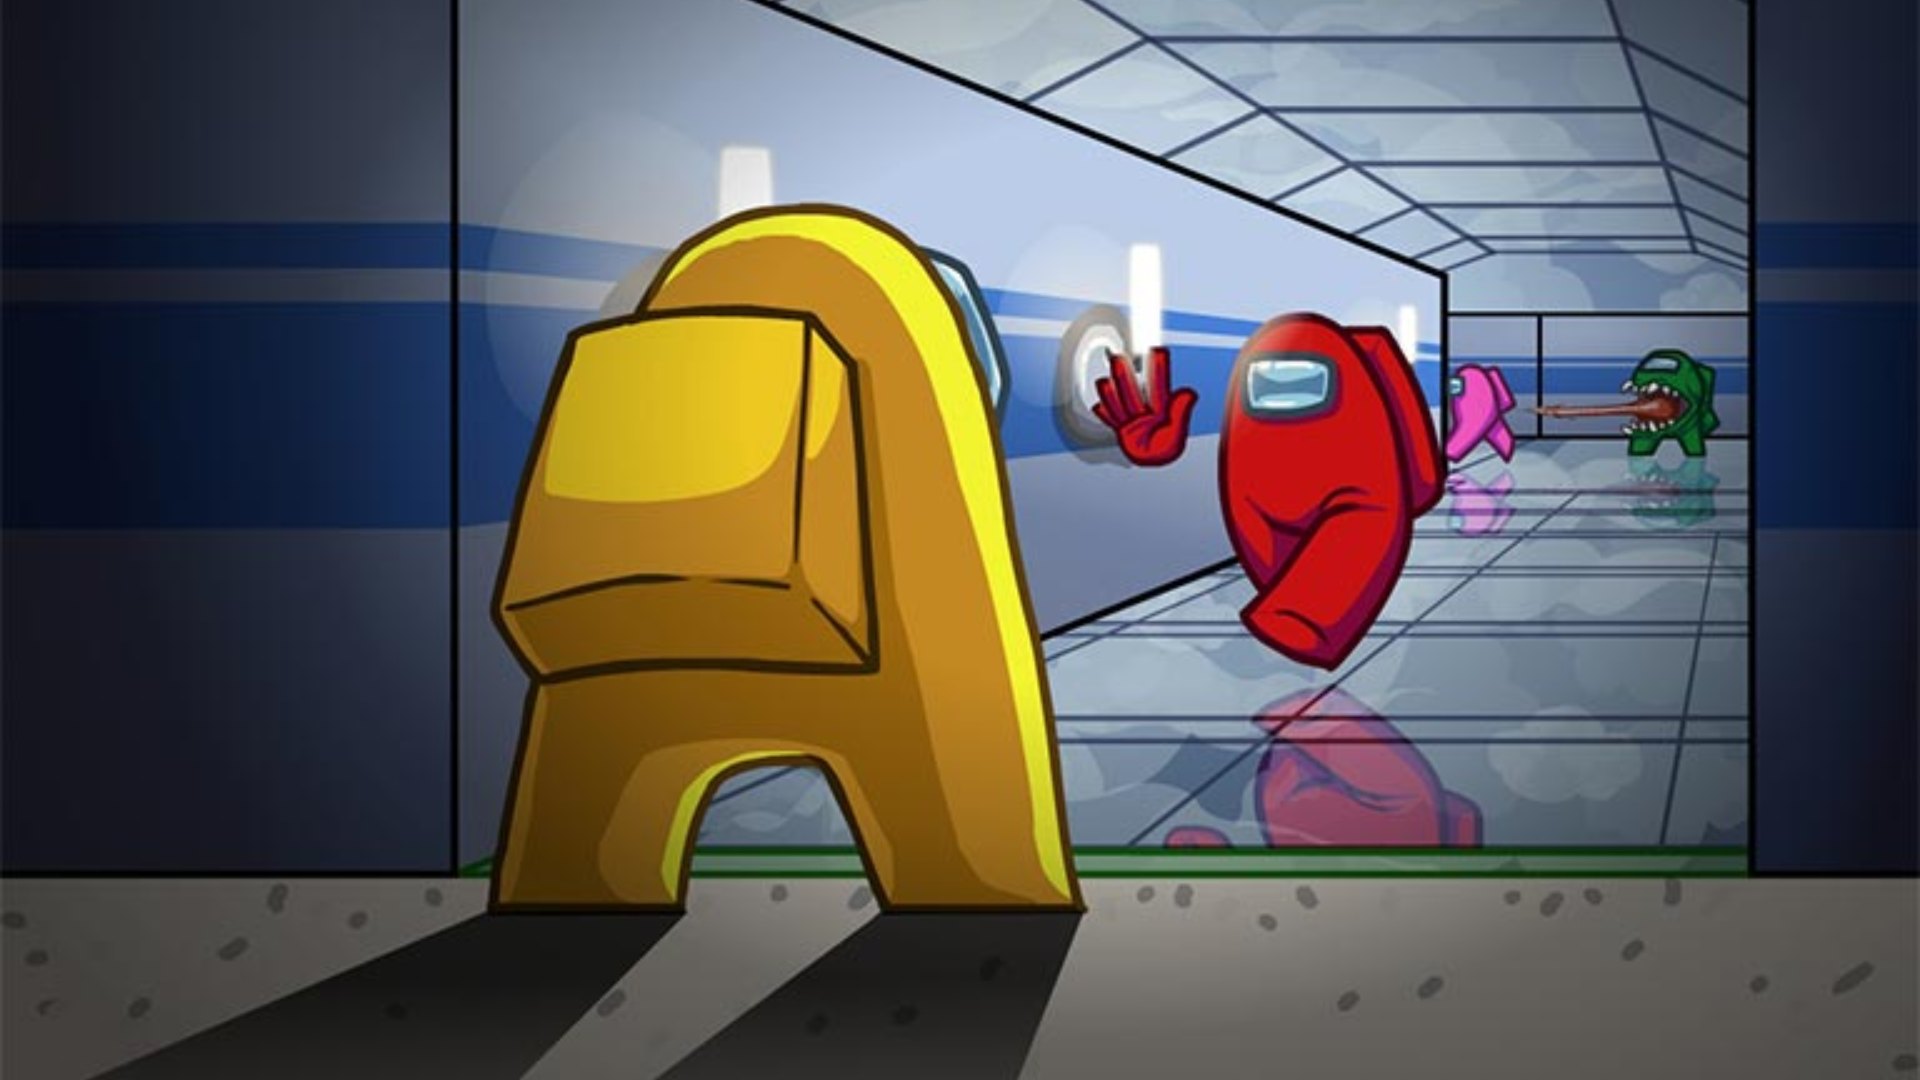 Meilleurs jeux mobiles: parmi nous. L'image montre un membre d'équipage rouge s'approchant d'un membre d'équipage jaune dans un tunnel